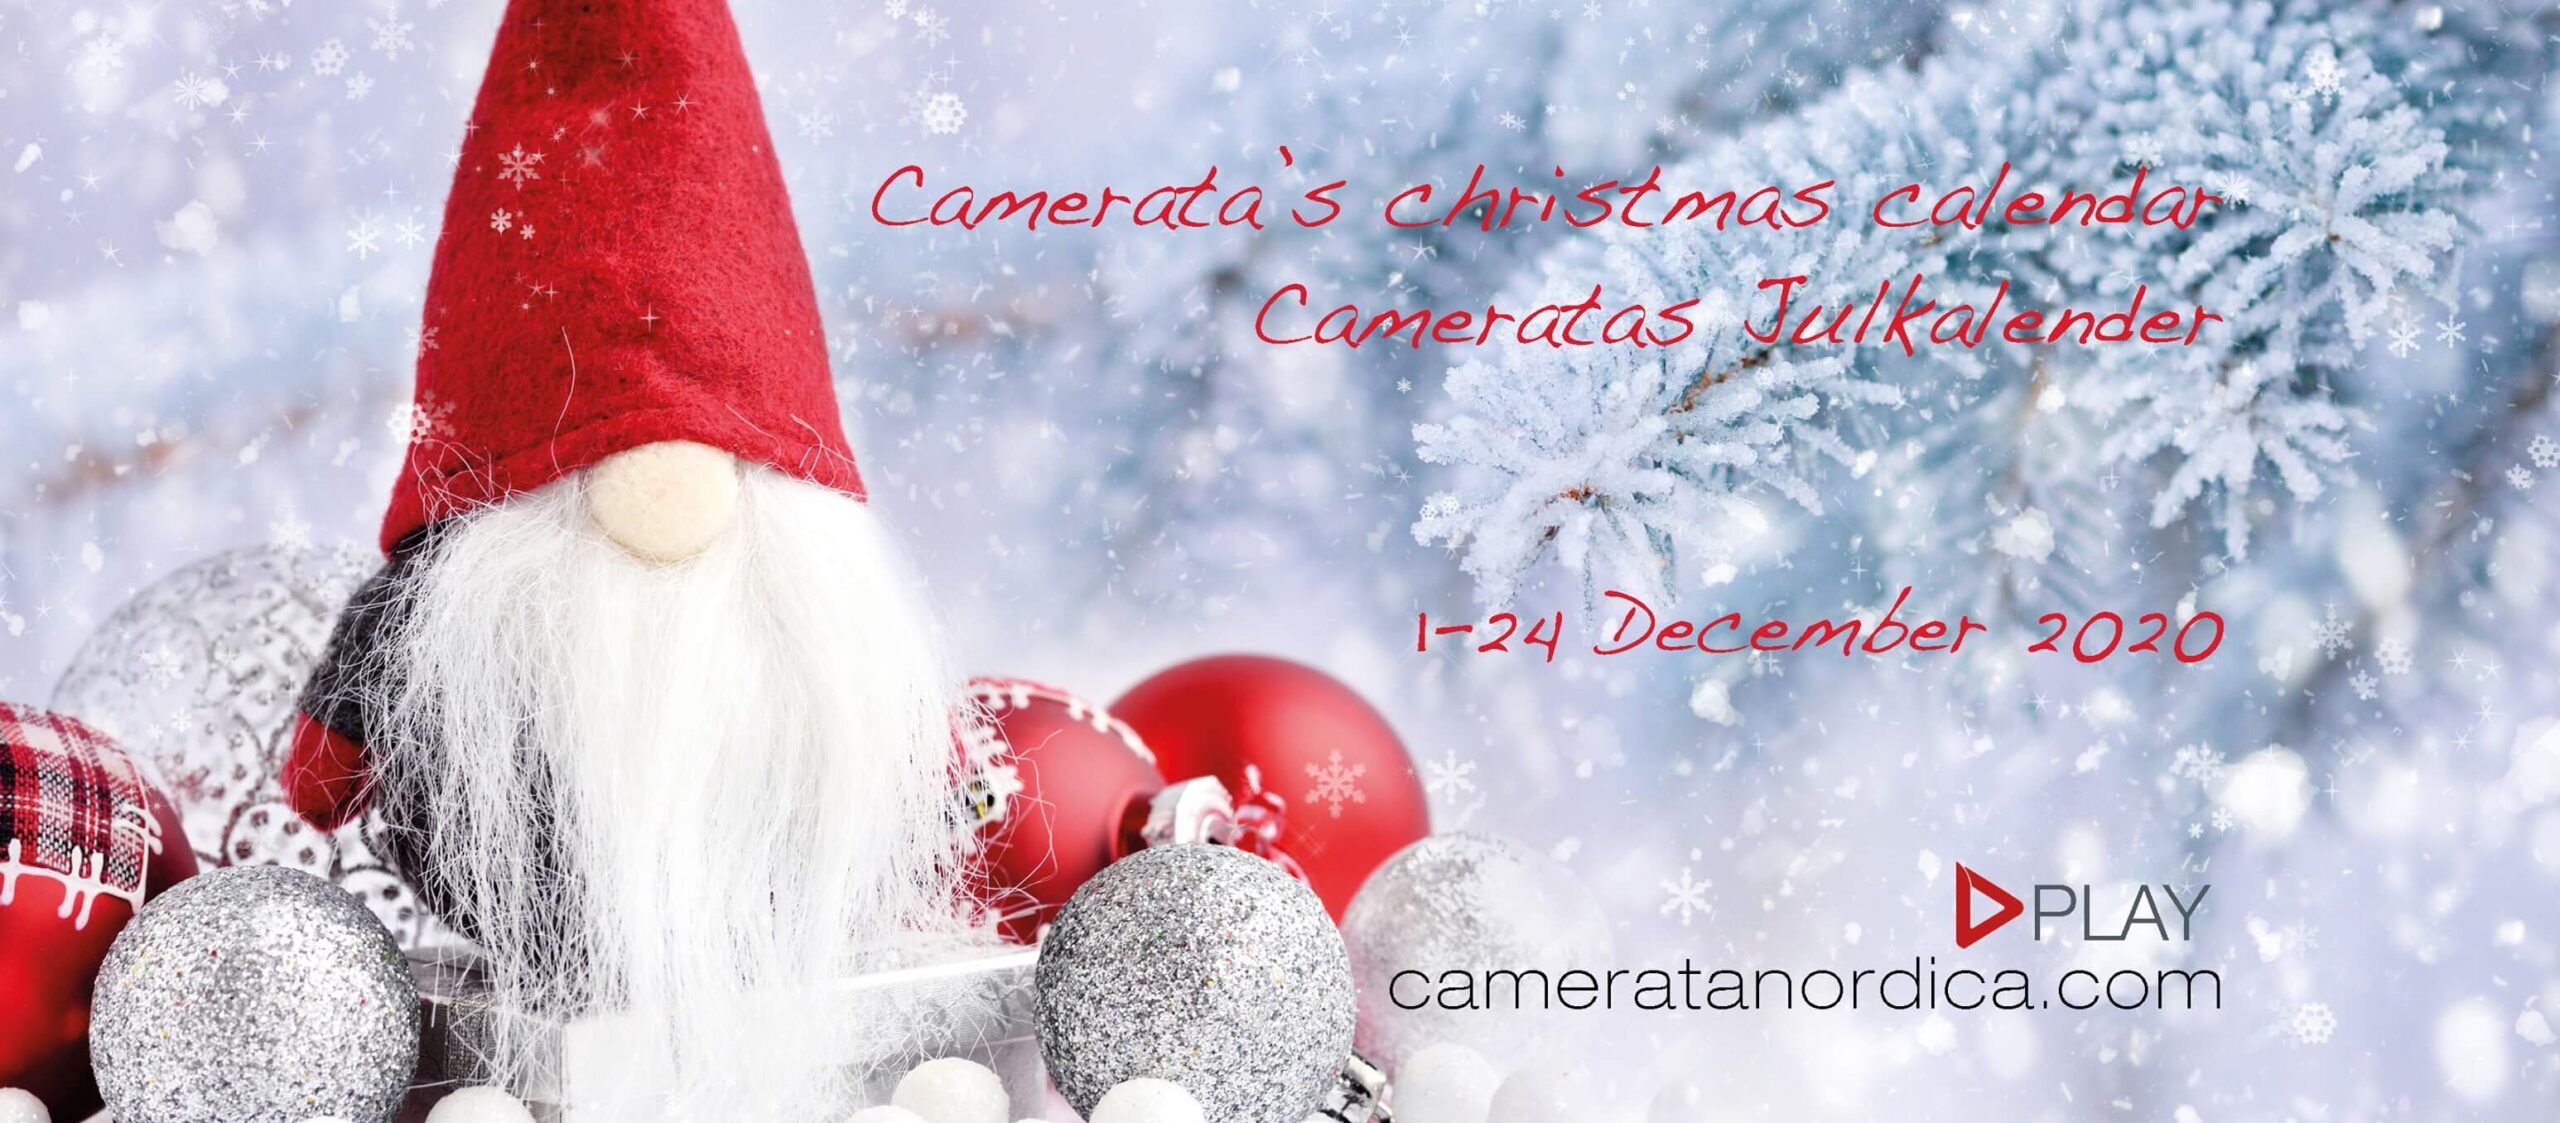 Camerata Nordica Christmas calendar